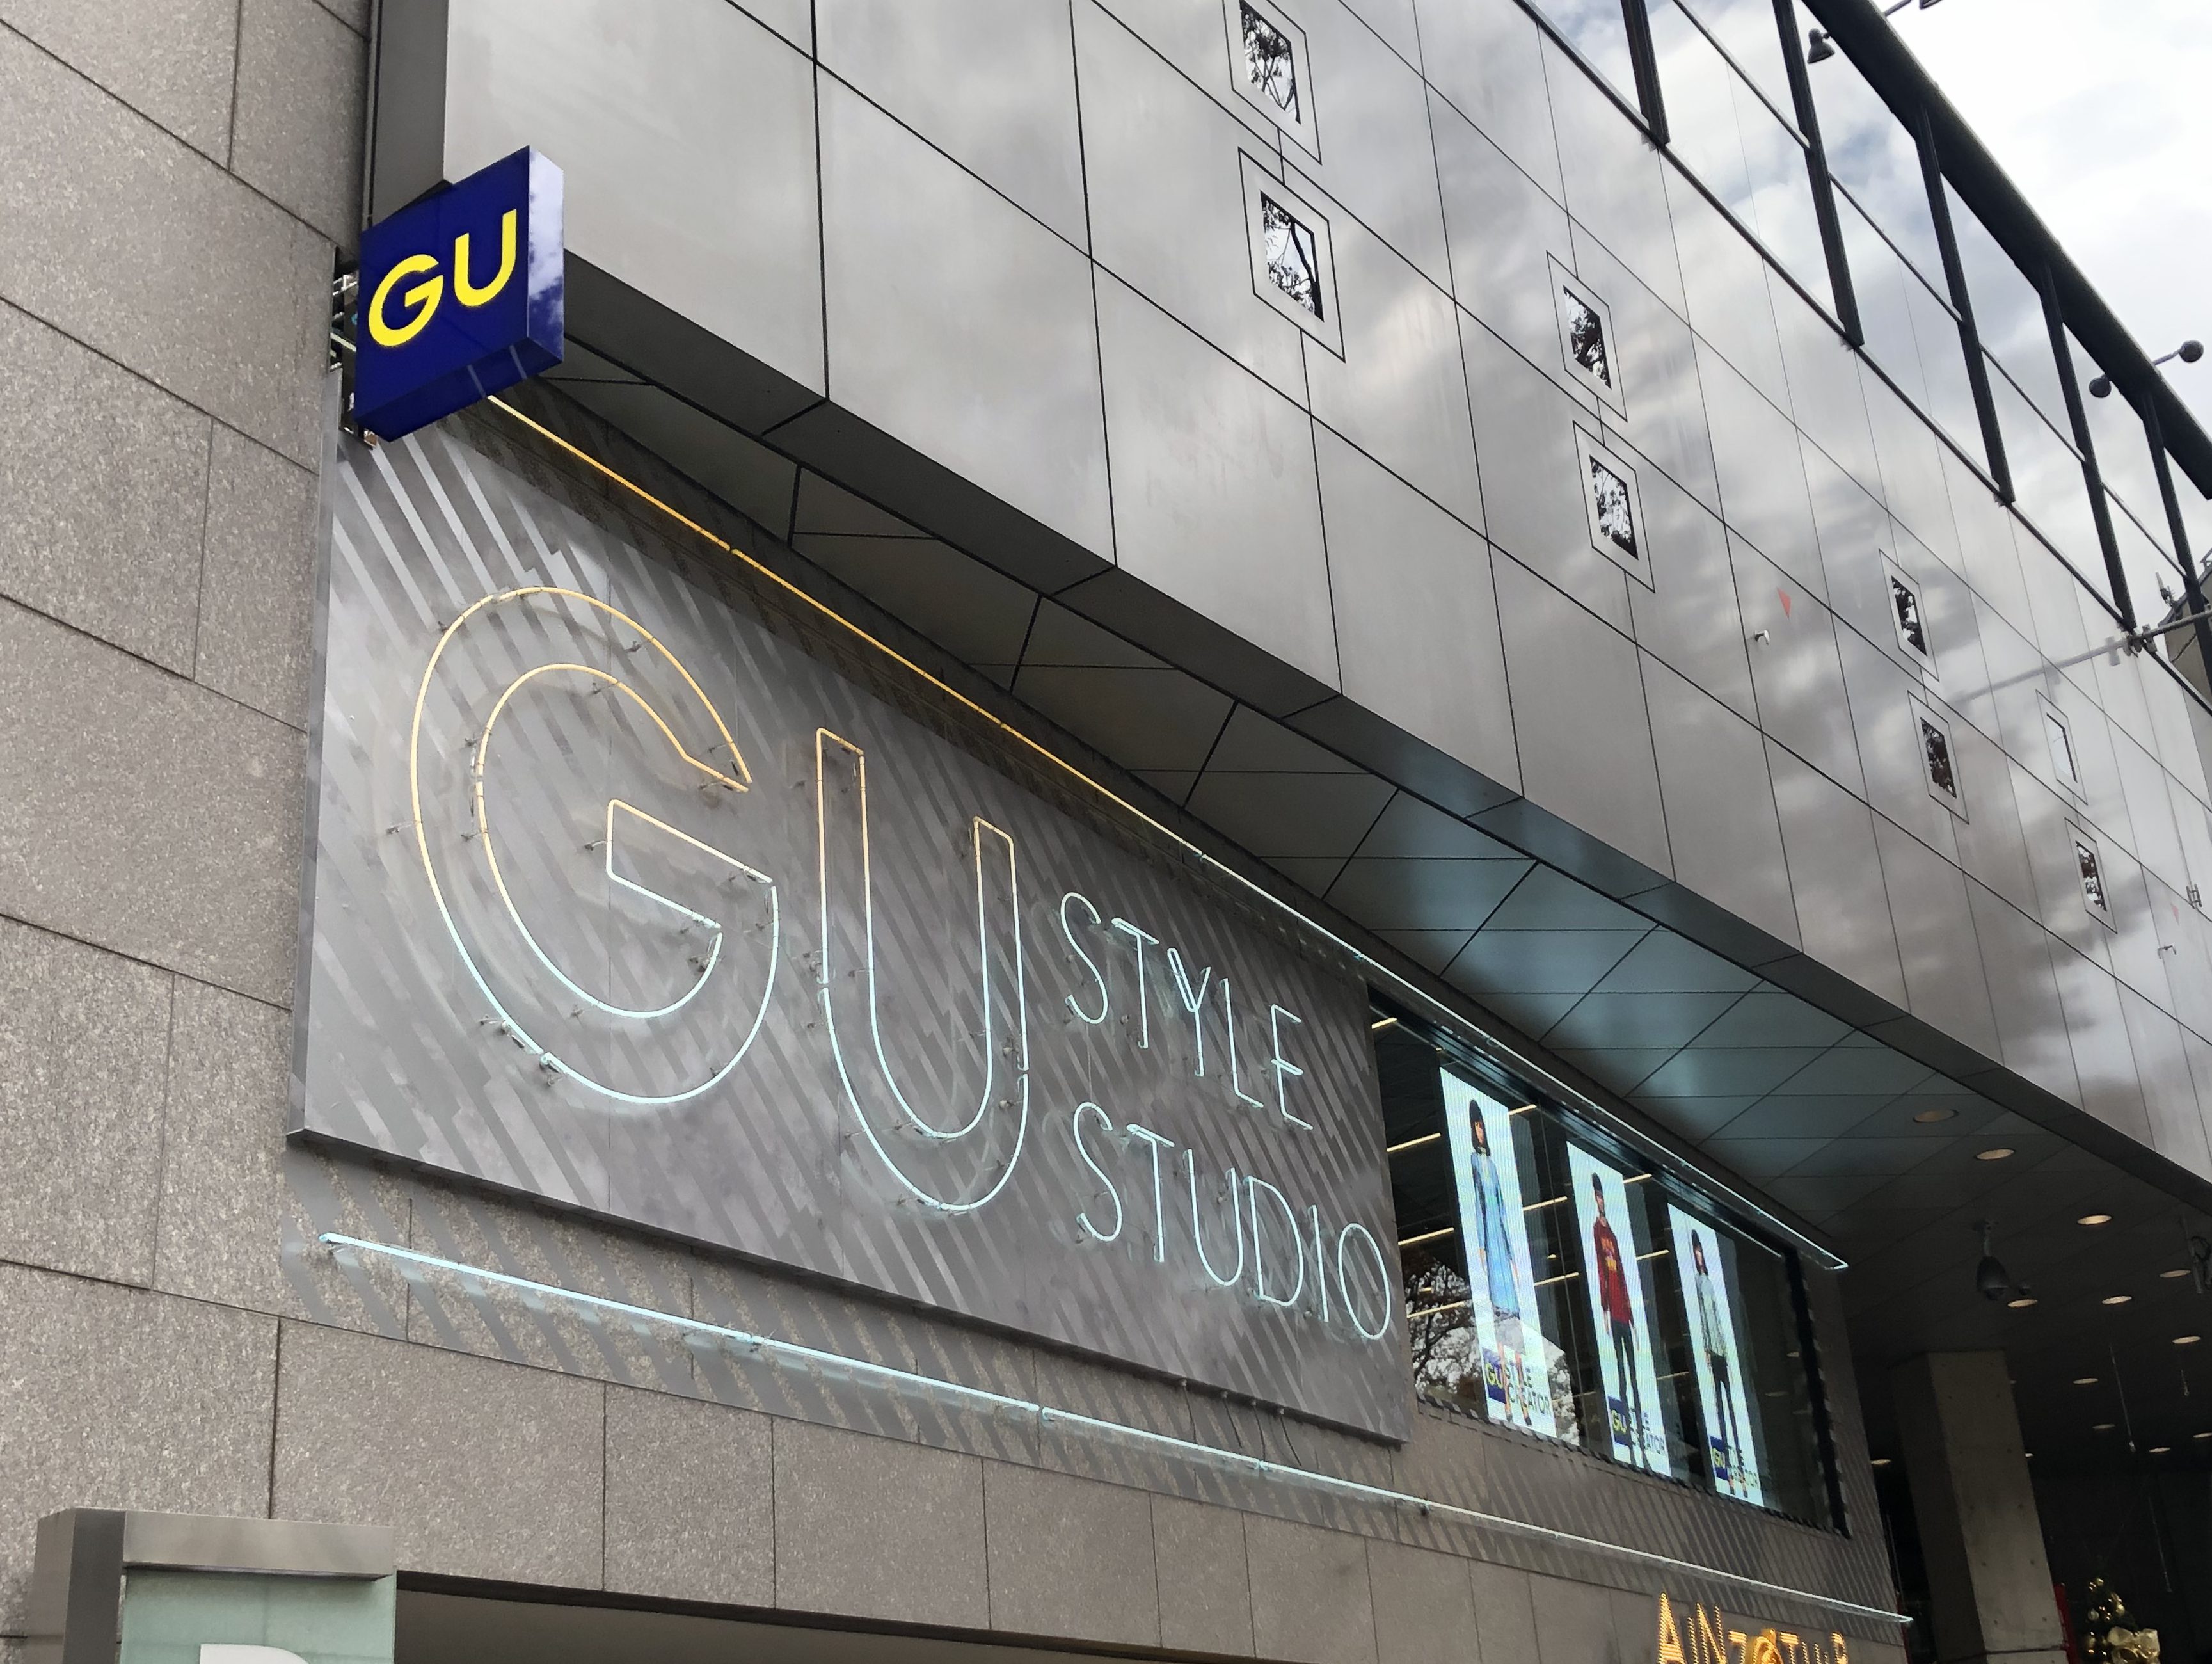 Guの次世代型店舗 Gu Style Studio 原宿 に潜入 手ぶらで最先端ショッピングしてきた Insight Puzzle インサイトパズル ハマる 店舗のデジタルマーケ